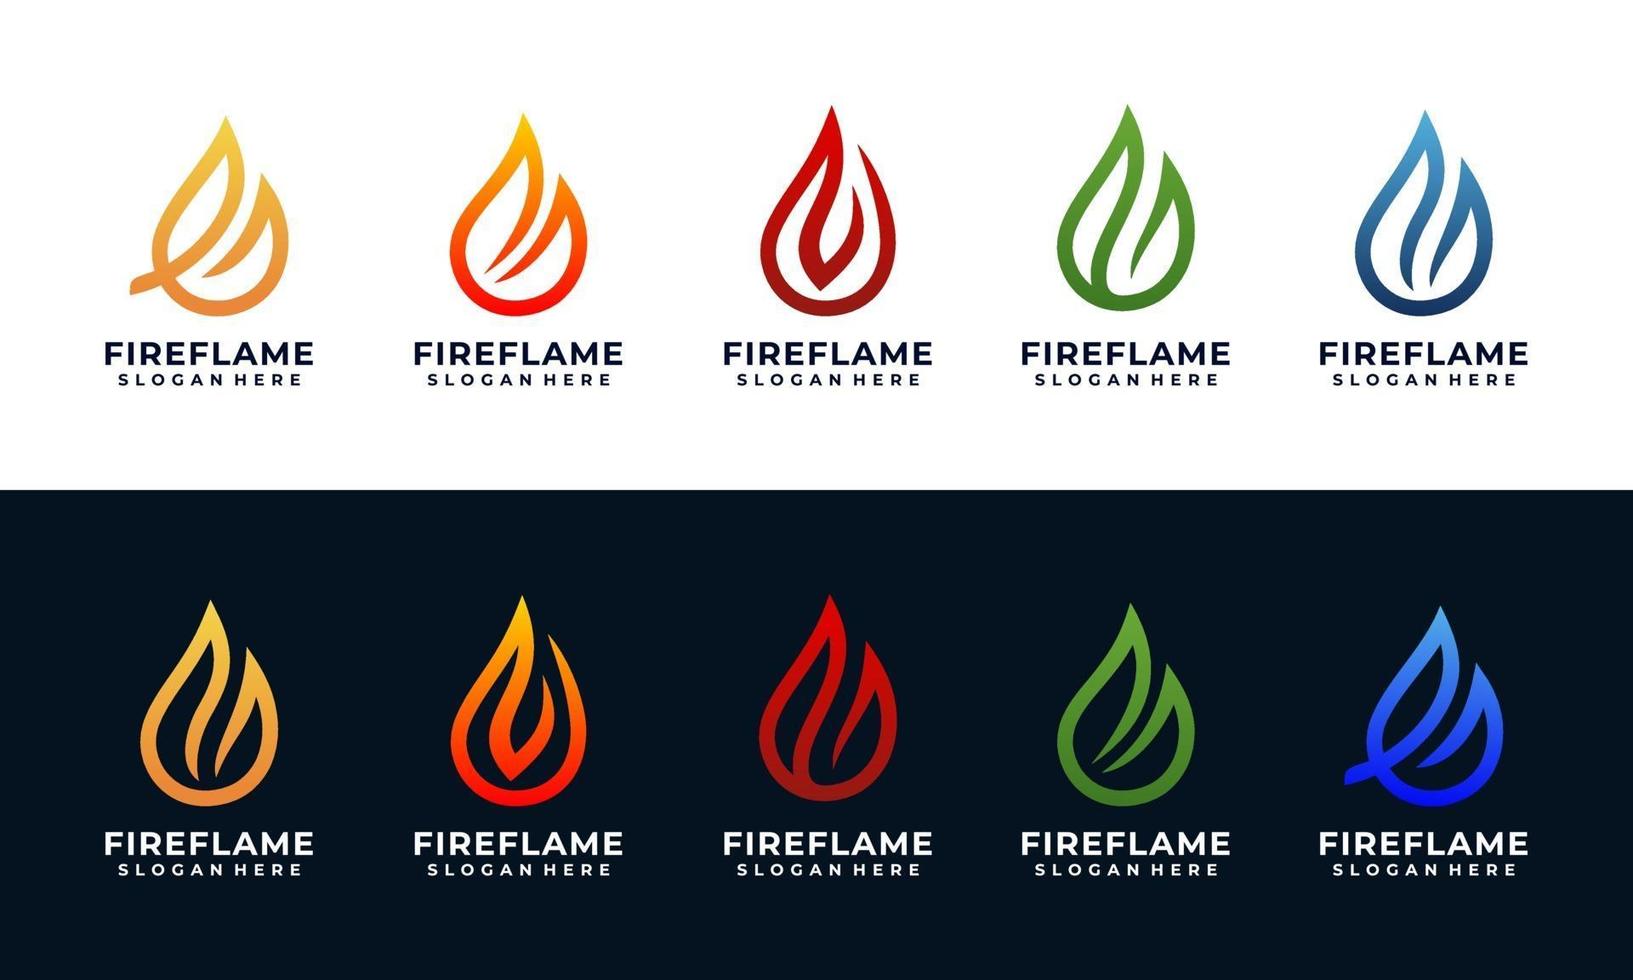 modelo de design de logotipo de fogo e chama com coleção de várias cores vetor